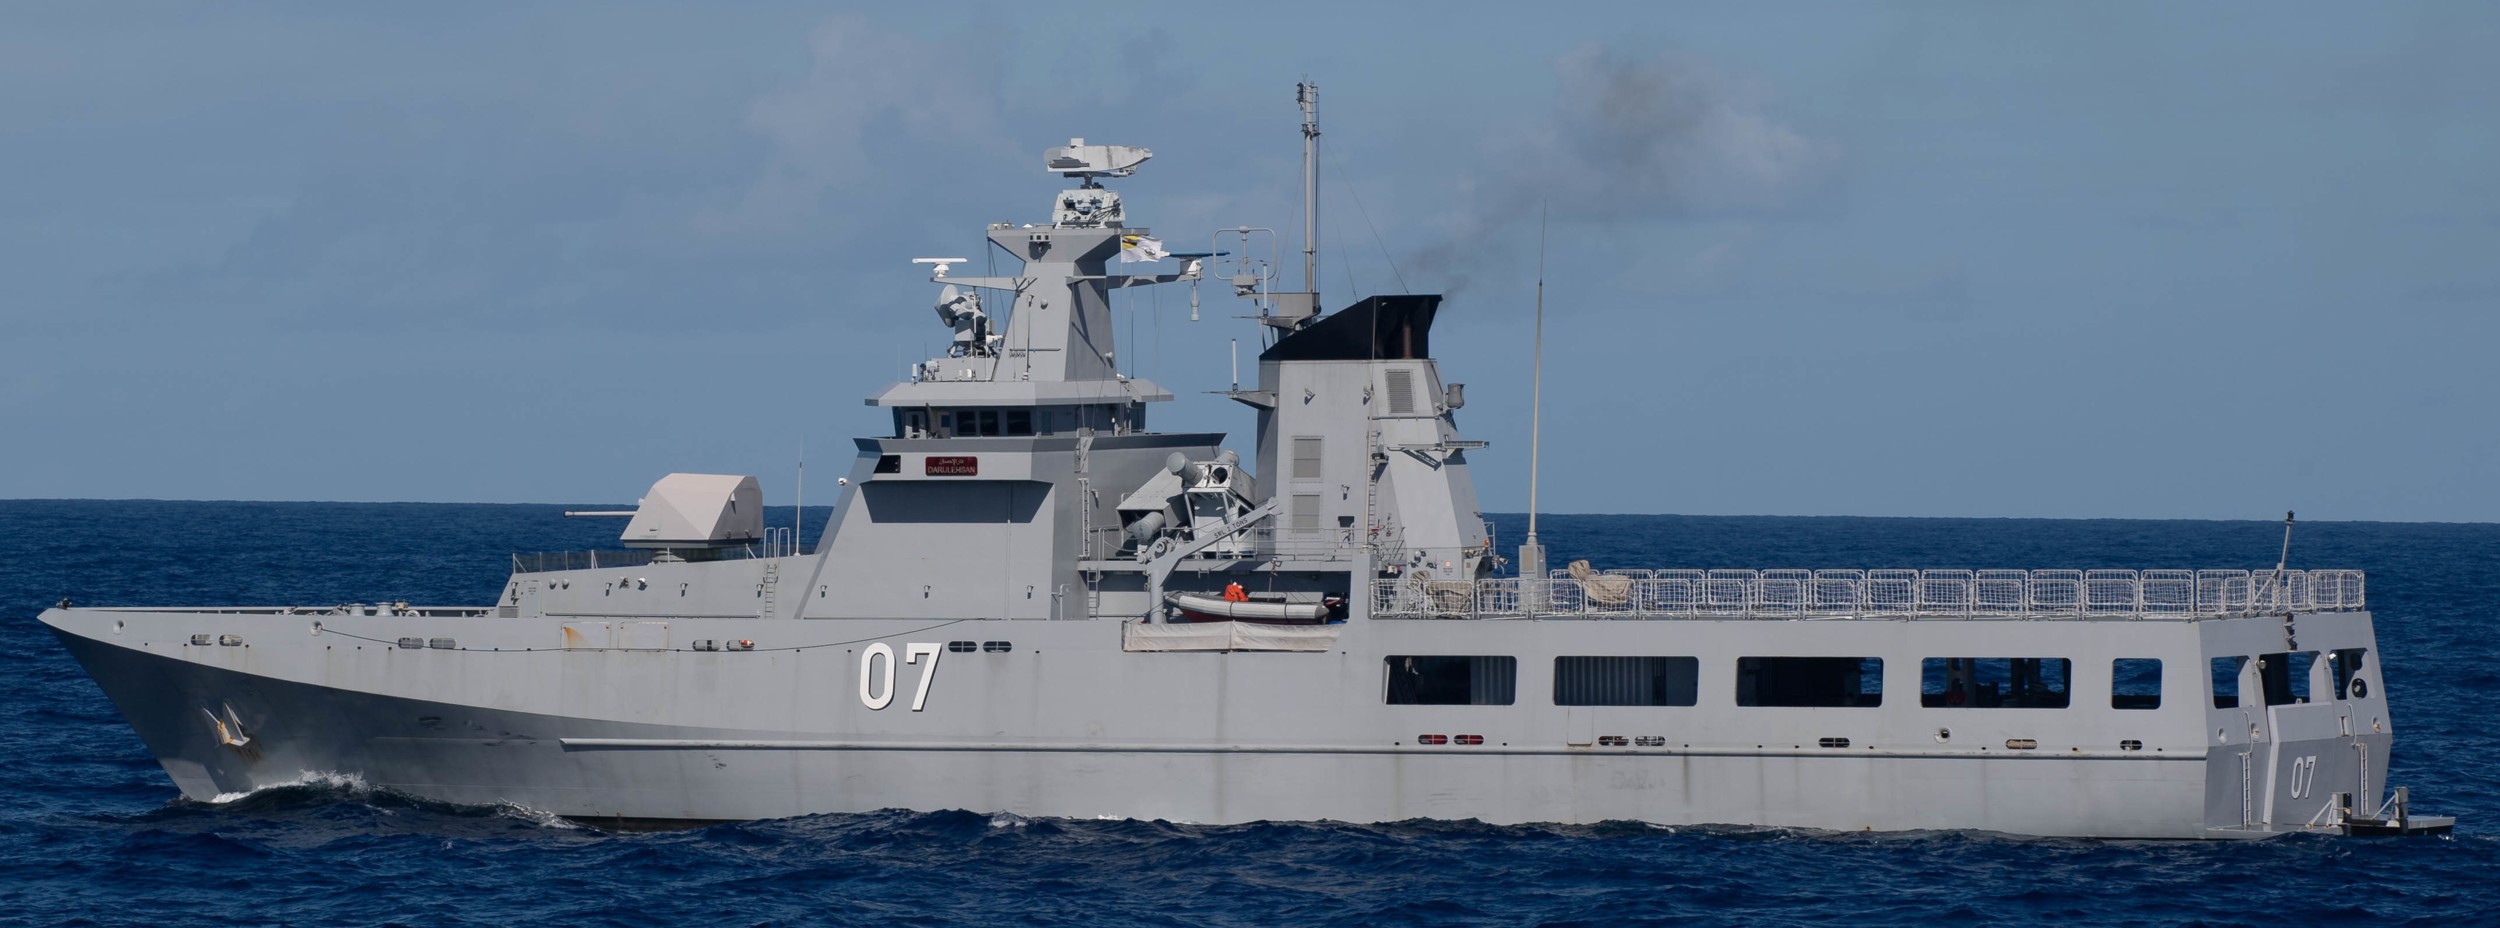 opv 07 kdb darulehsan offshore patrol vessel darussalem class royal brunei navy 05